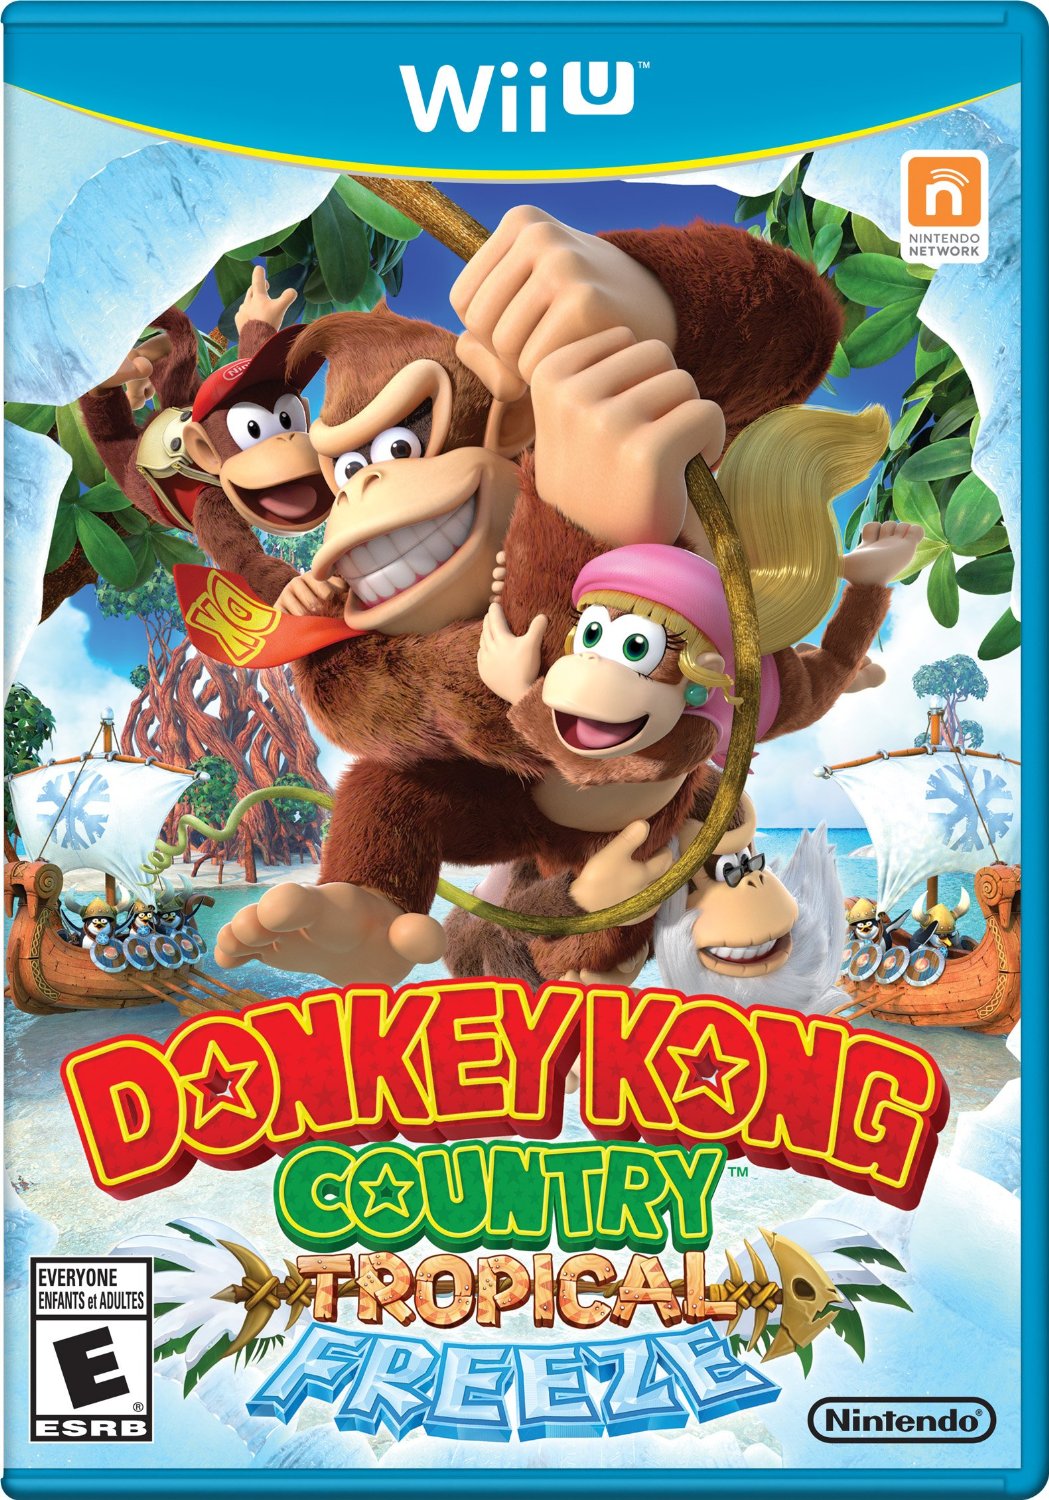 Donkey kong wii u release date